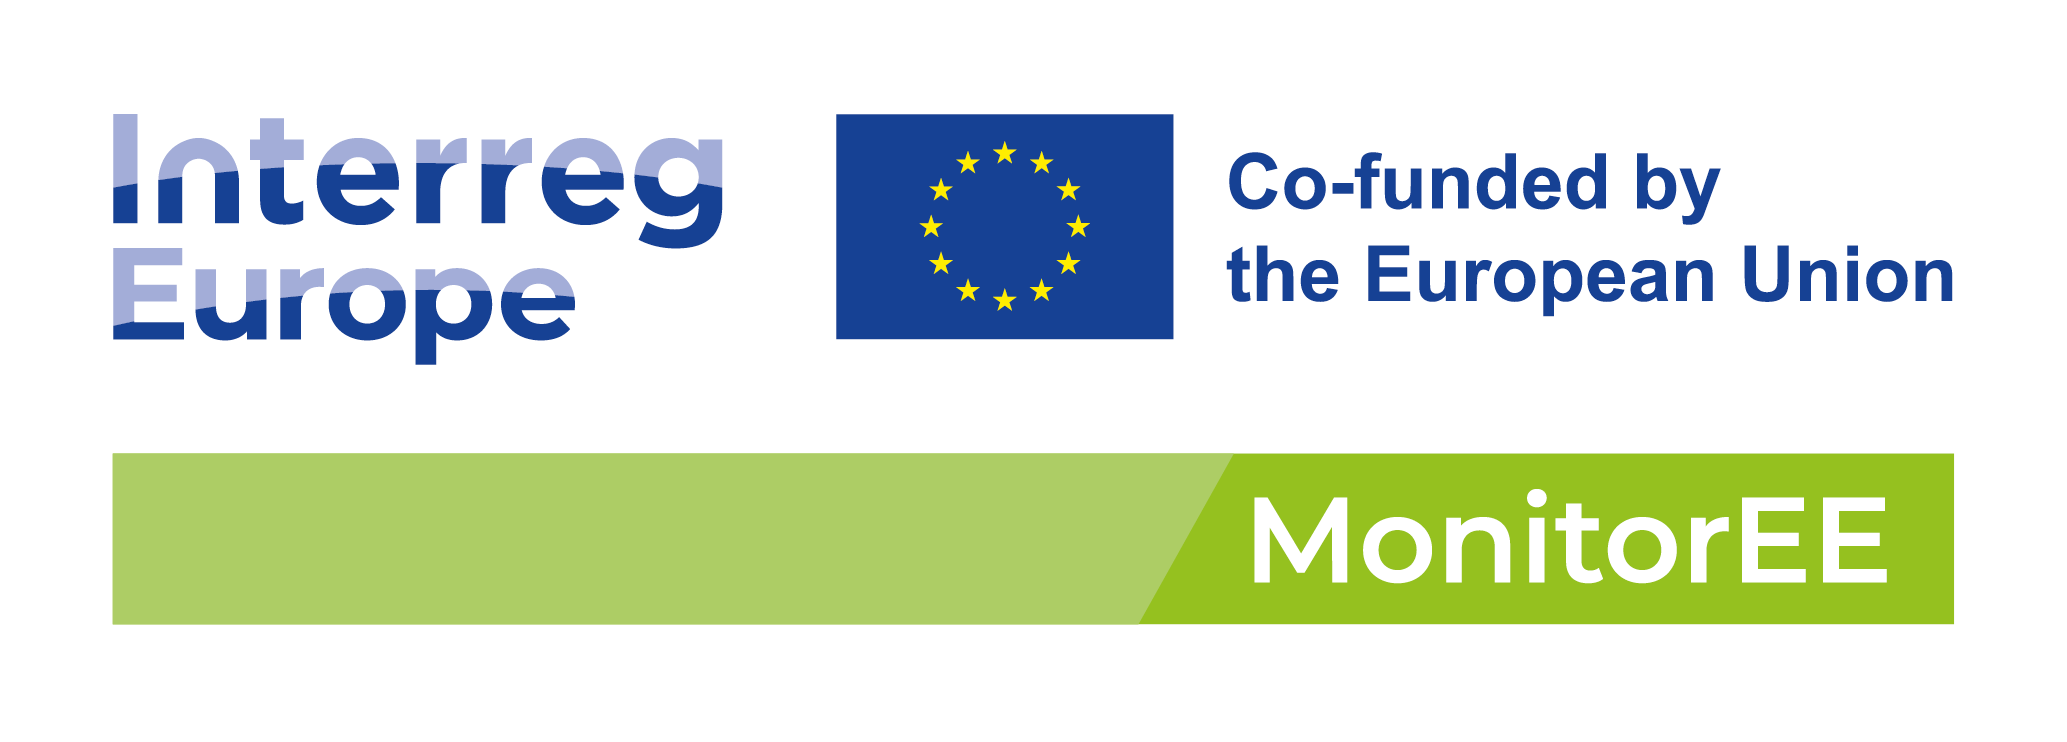 Logo, jossa teksti Interreg Europe sekö logo, jossa EU-lippu ja teksti Co-funded by the EU. Alla vihreä vaakapalkki, jonka päällä teksti MonitorEE.